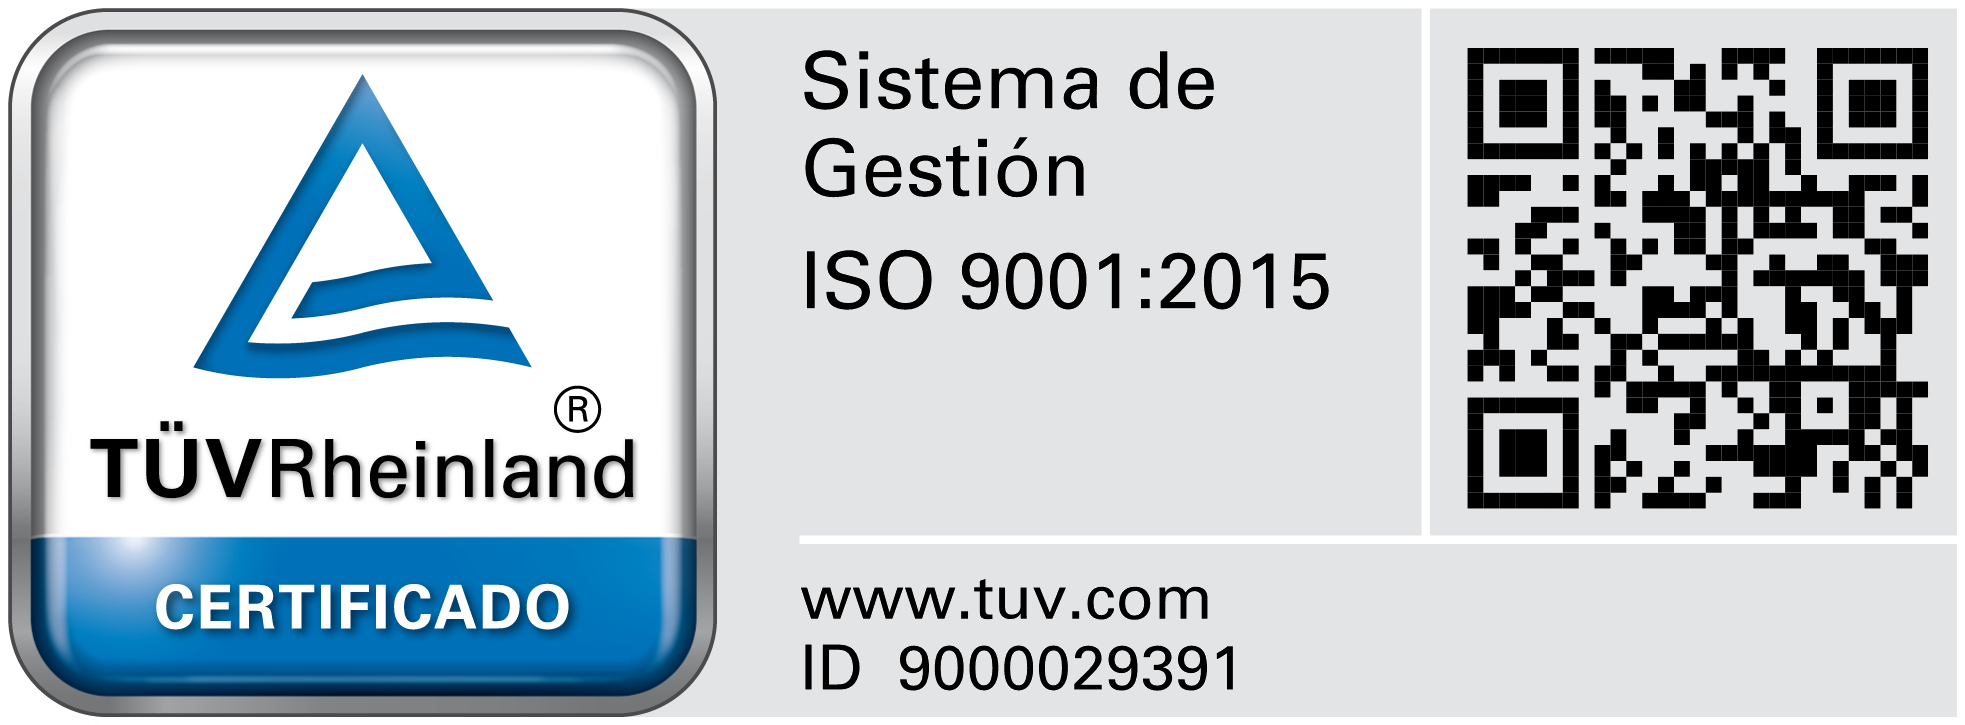 Sistema de Gestion ISO 9001:2015